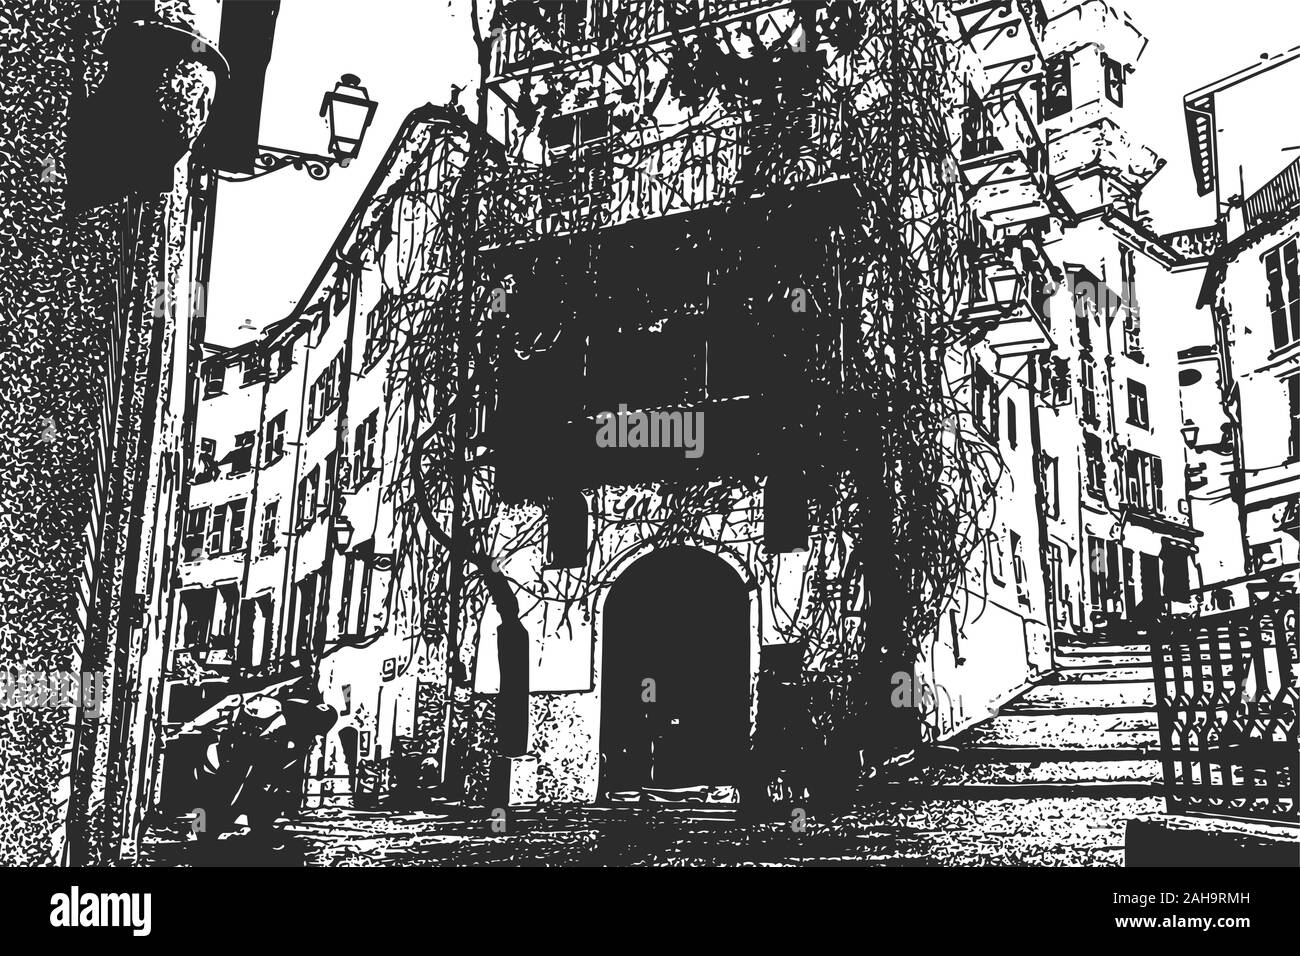 Europäische Stadt. Die engen Gassen der Altstadt. Jahrgang hand gezeichnete Skizze Stock Vektor